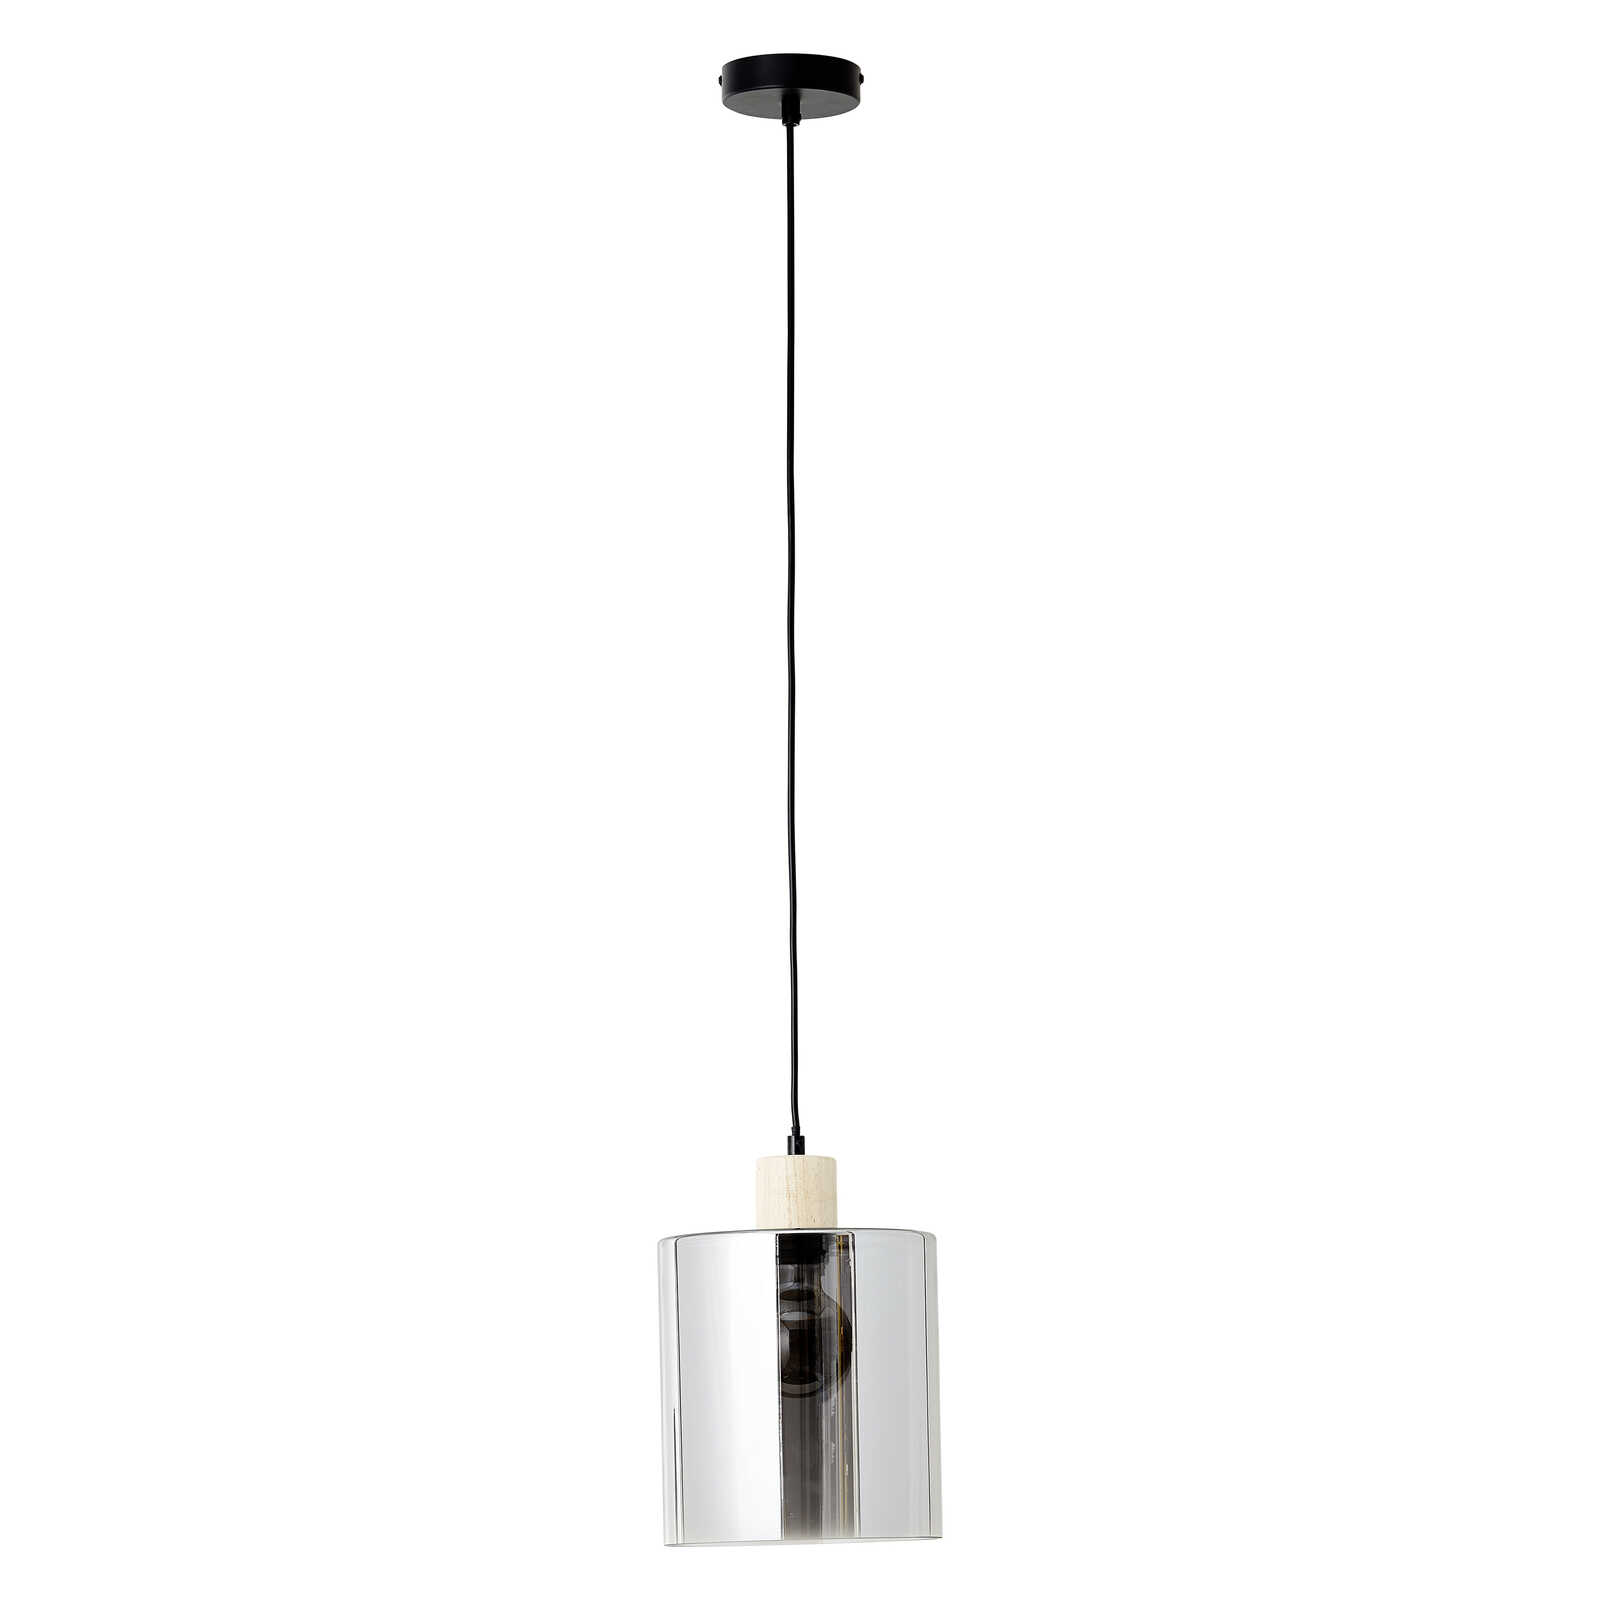             Glazen hanglamp - Tim 1 - Bruin
        